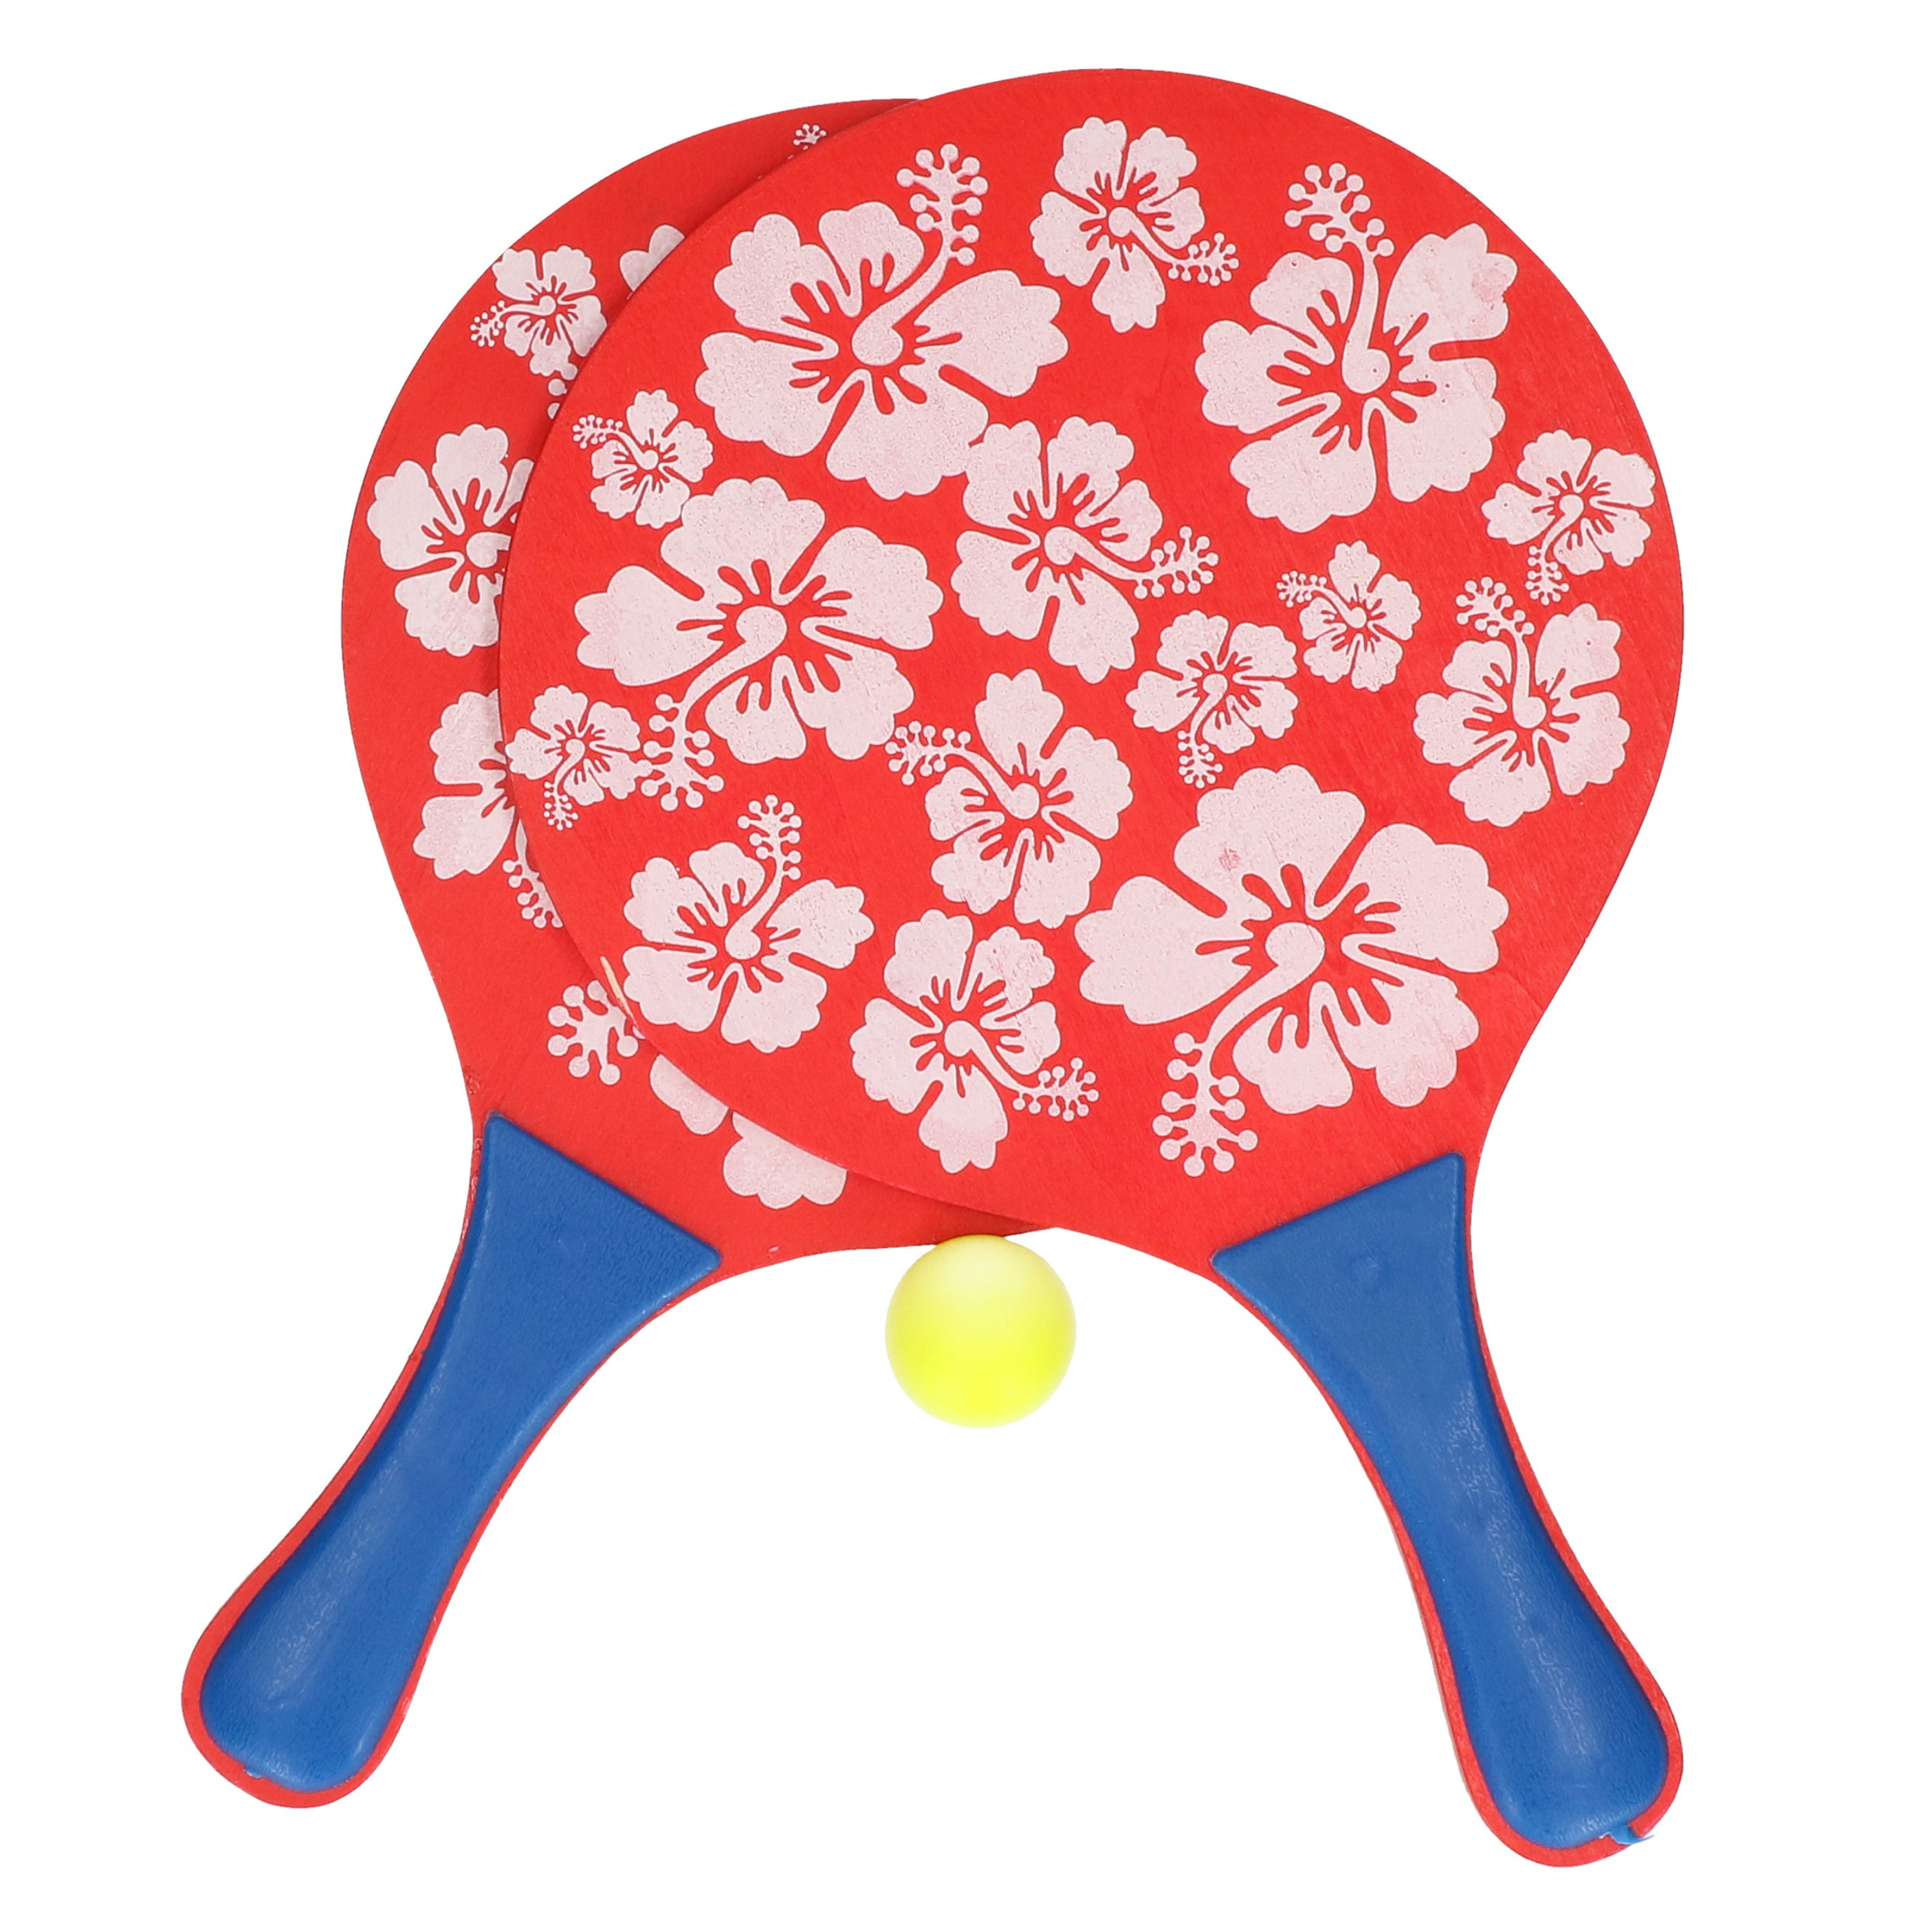 Actief speelgoed tennis-beachball setje rood met bloemenmotief